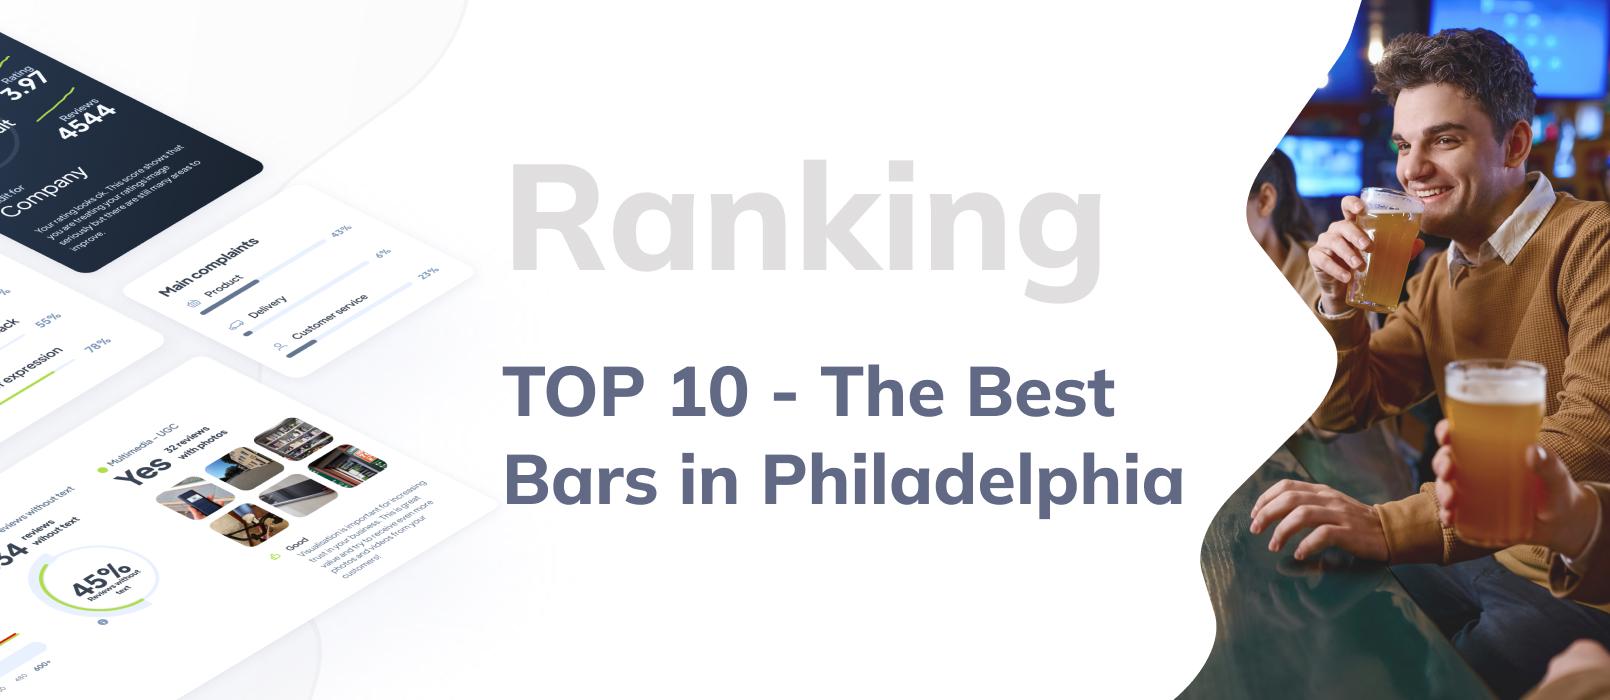 10 of the Best Bars in Philadelphia - ranking based on Google Reviews